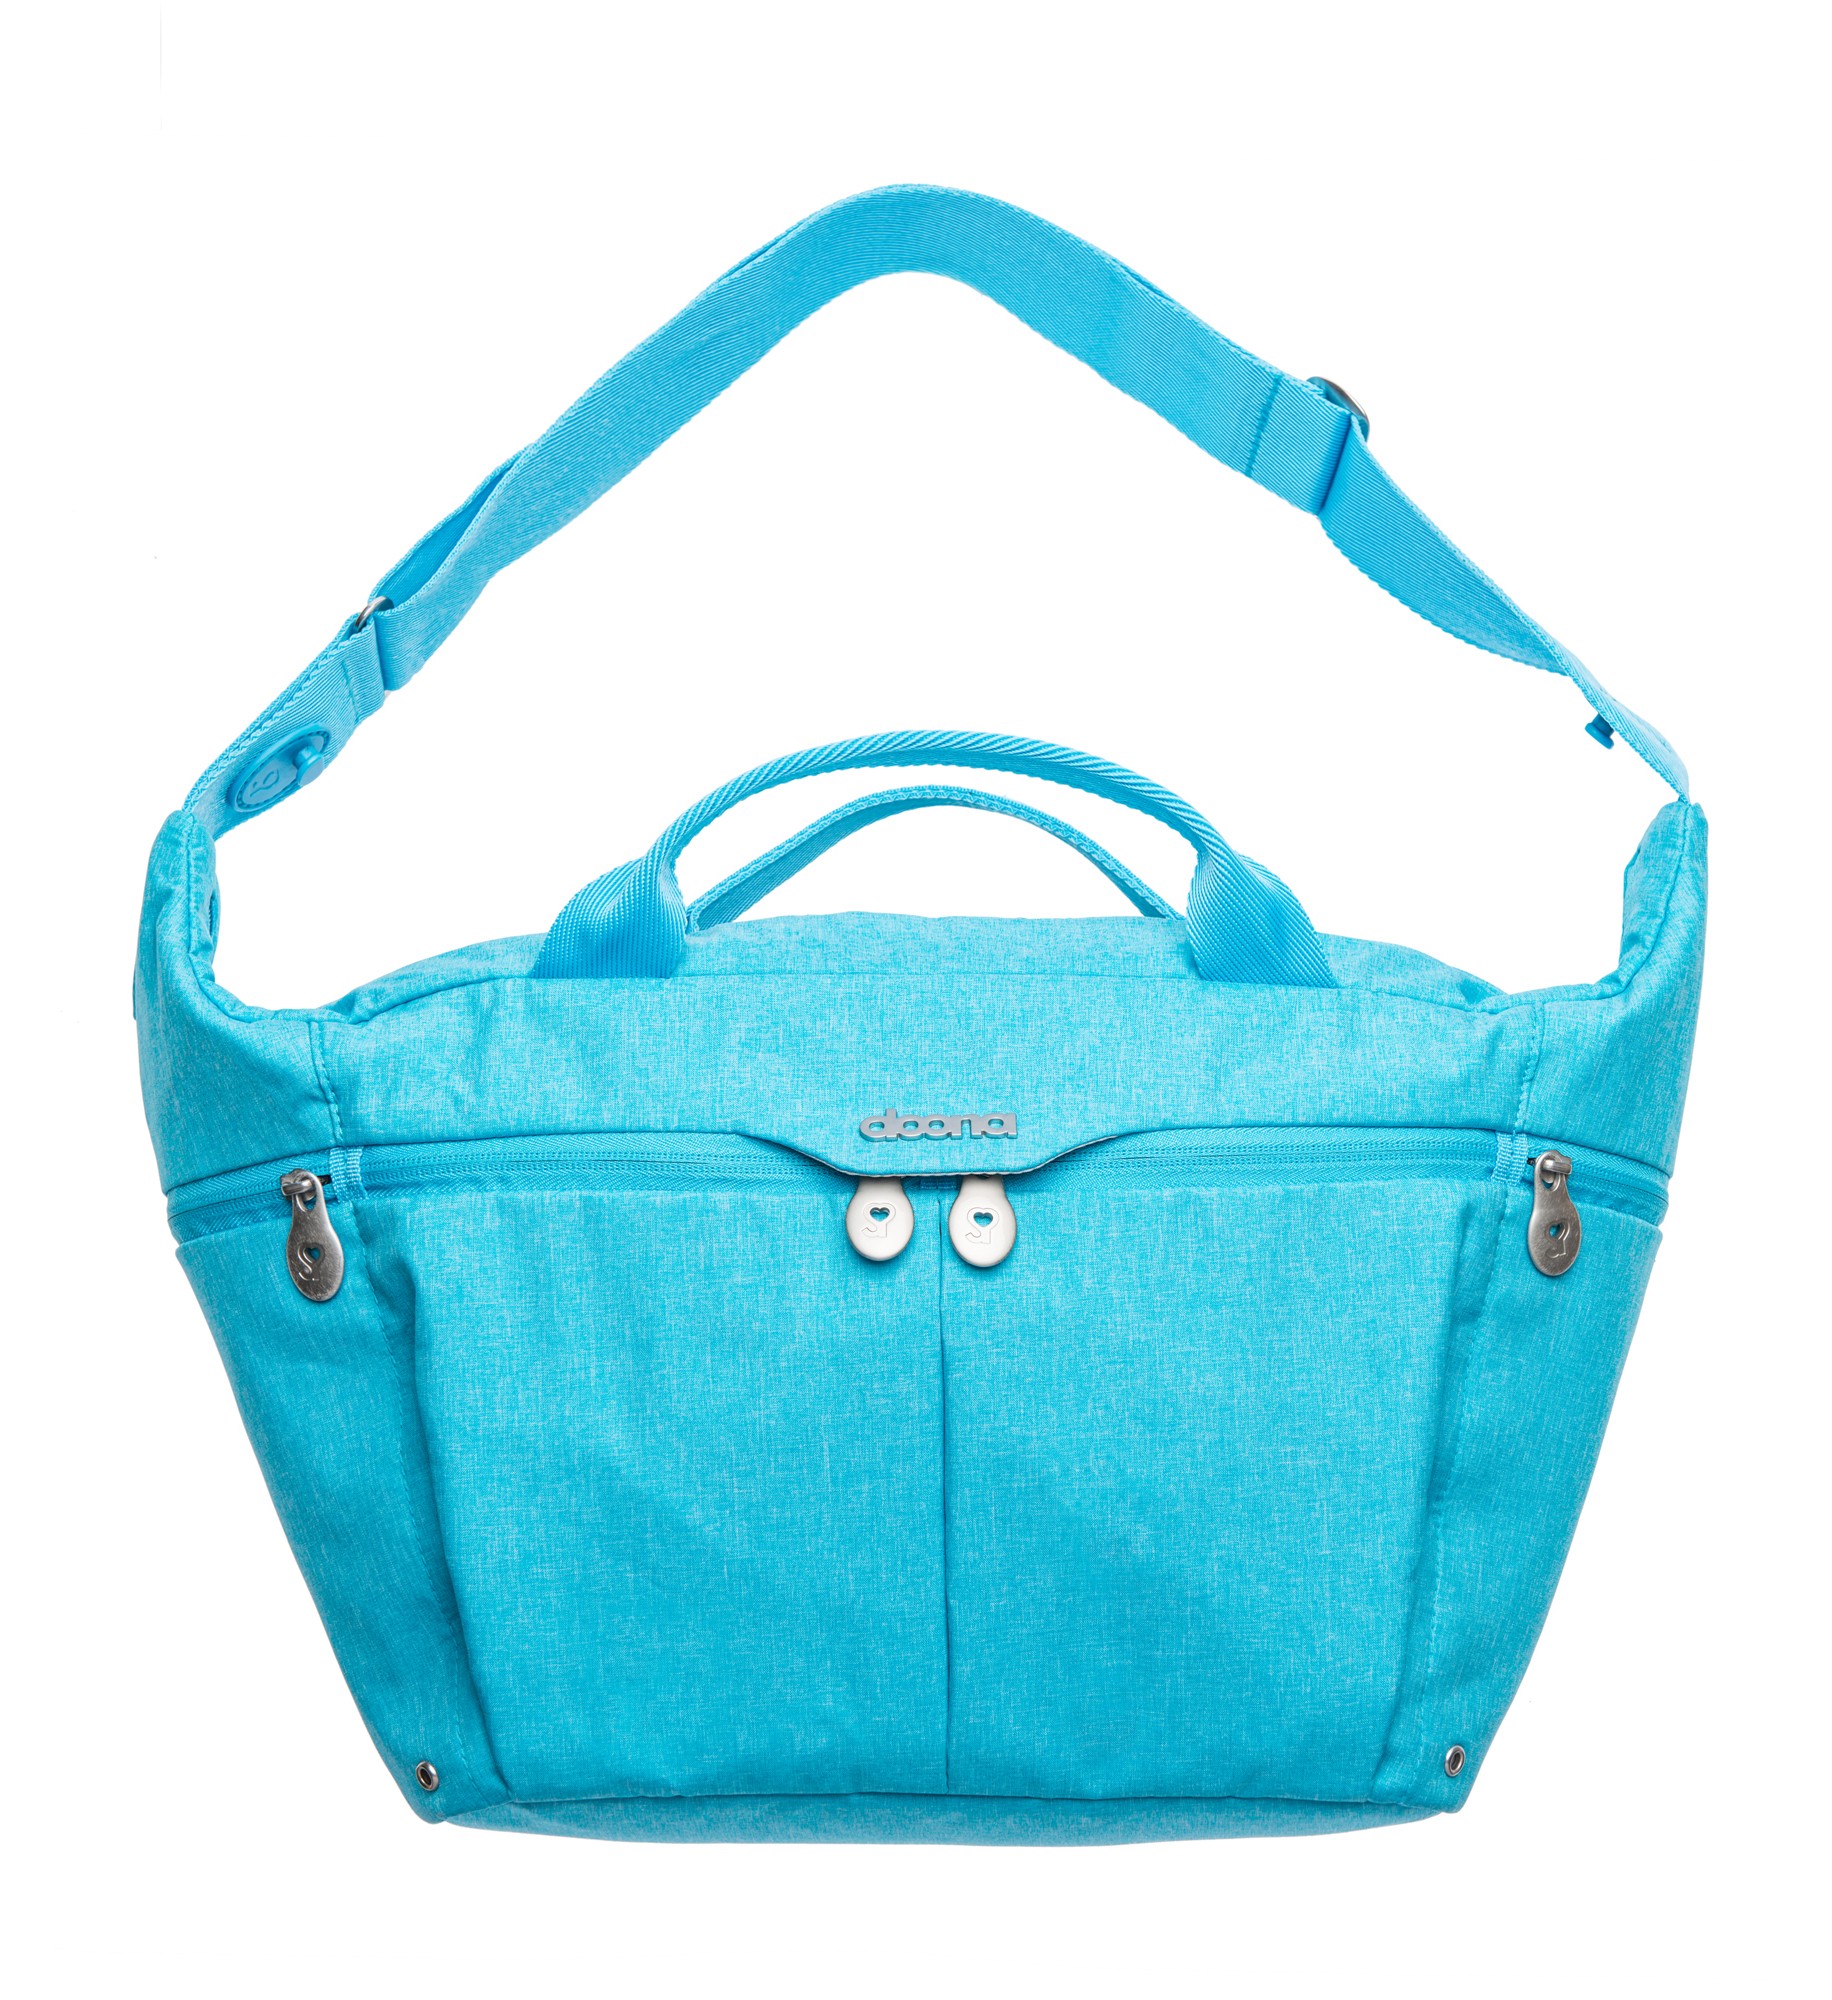 Doona Plus celodenní taška Turquoise